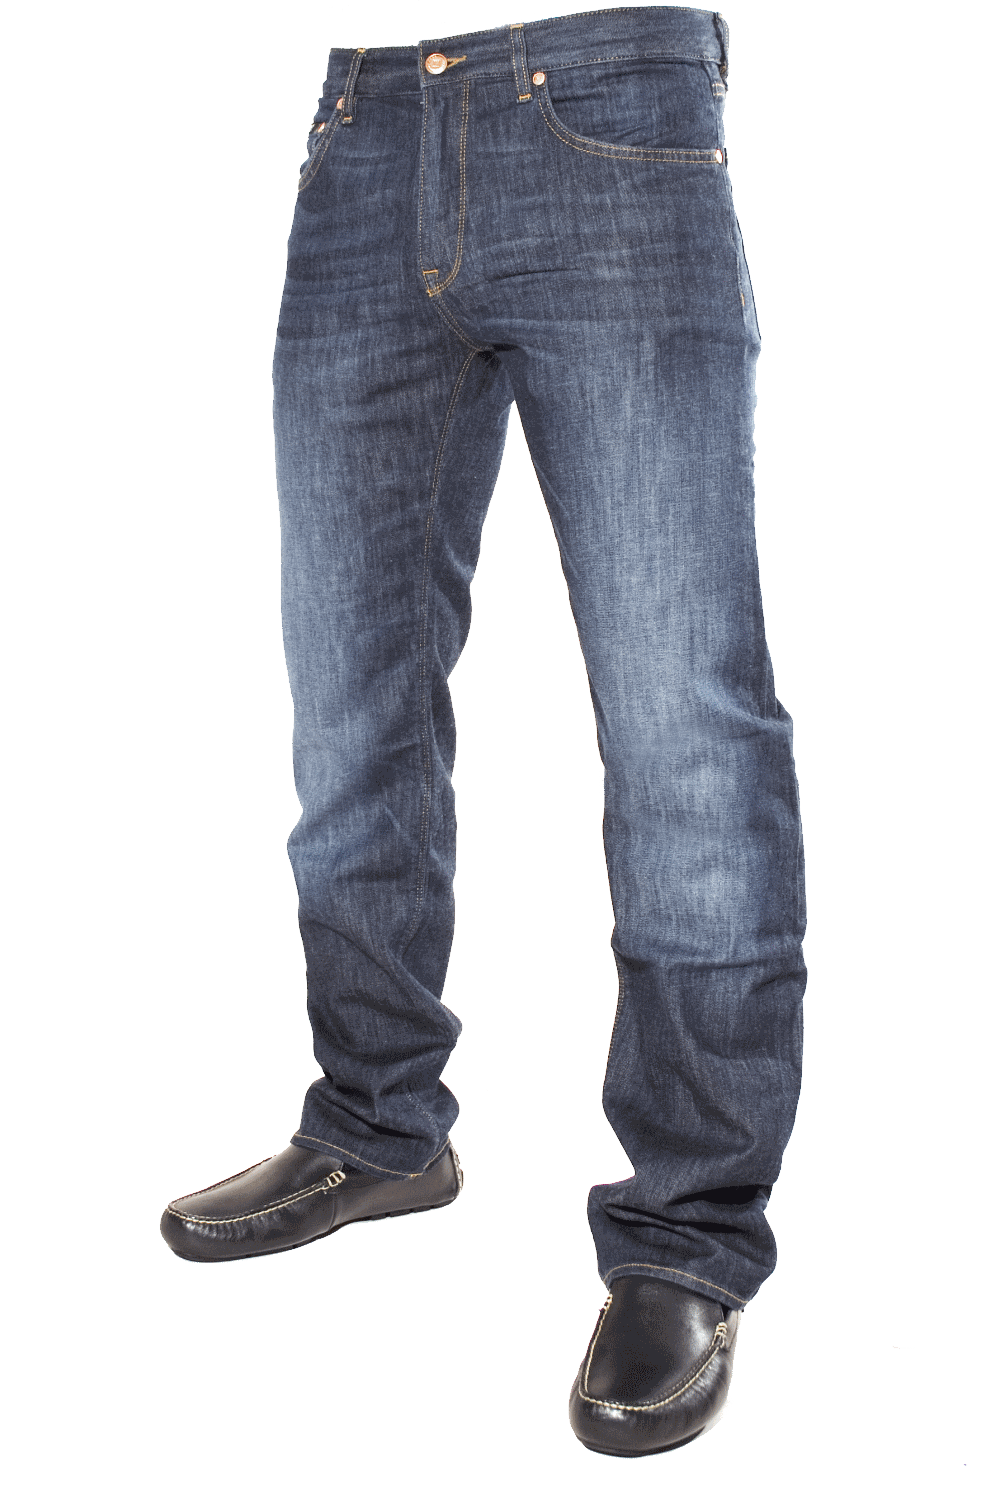 jeans clipart transparent background